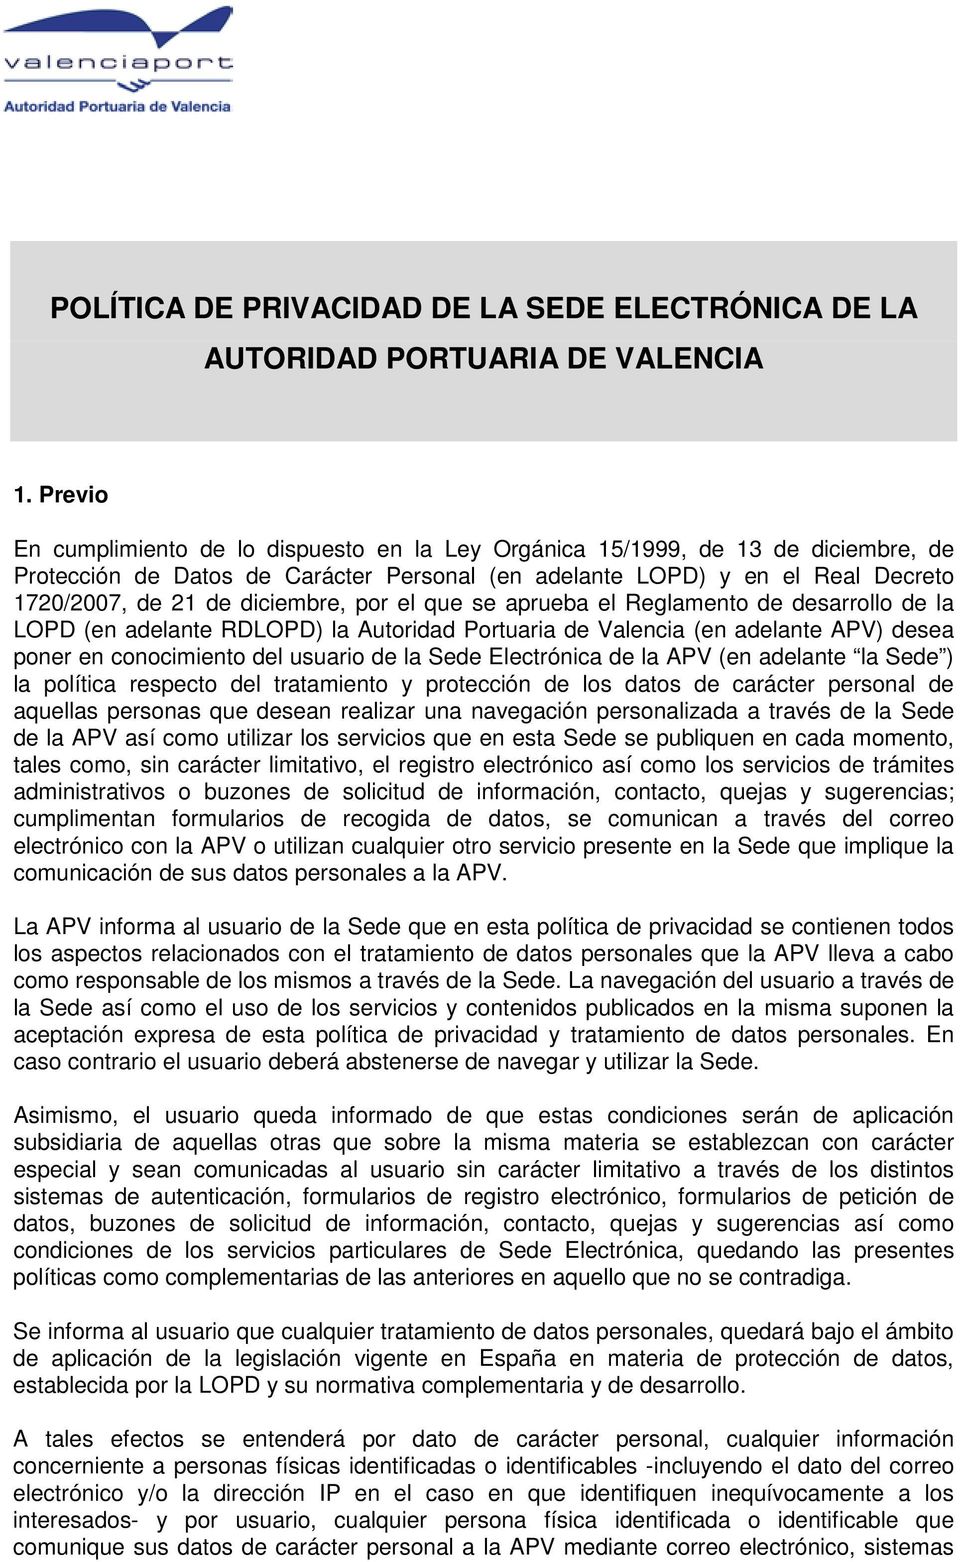 diciembre, por el que se aprueba el Reglamento de desarrollo de la LOPD (en adelante RDLOPD) la Autoridad Portuaria de Valencia (en adelante APV) desea poner en conocimiento del usuario de la Sede